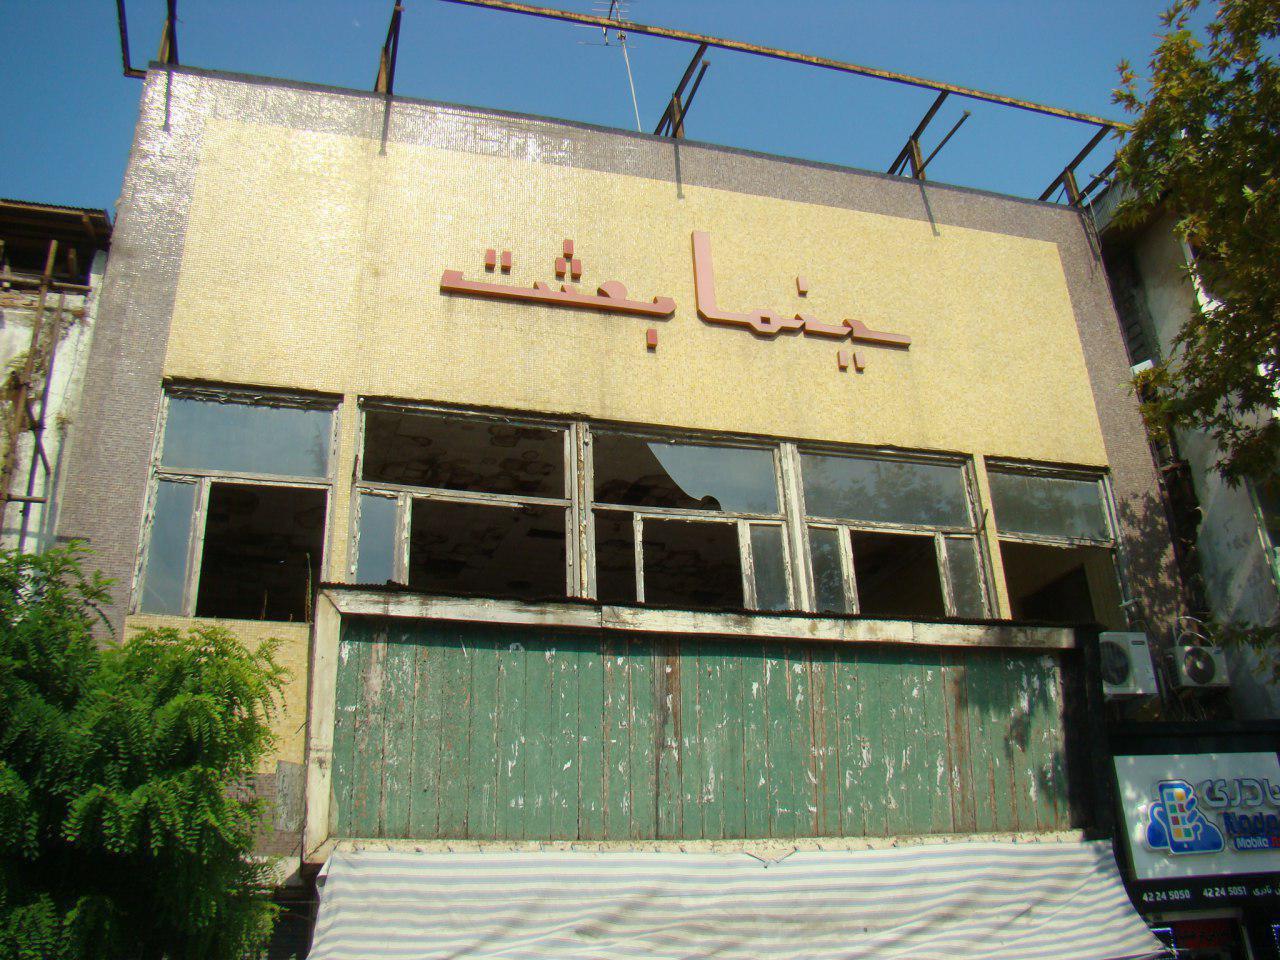 تخریب ساختمان سینما بعثت شهر لاهیجان/لزوم رسیدگی به ساختمان های خطرآفرین شهر